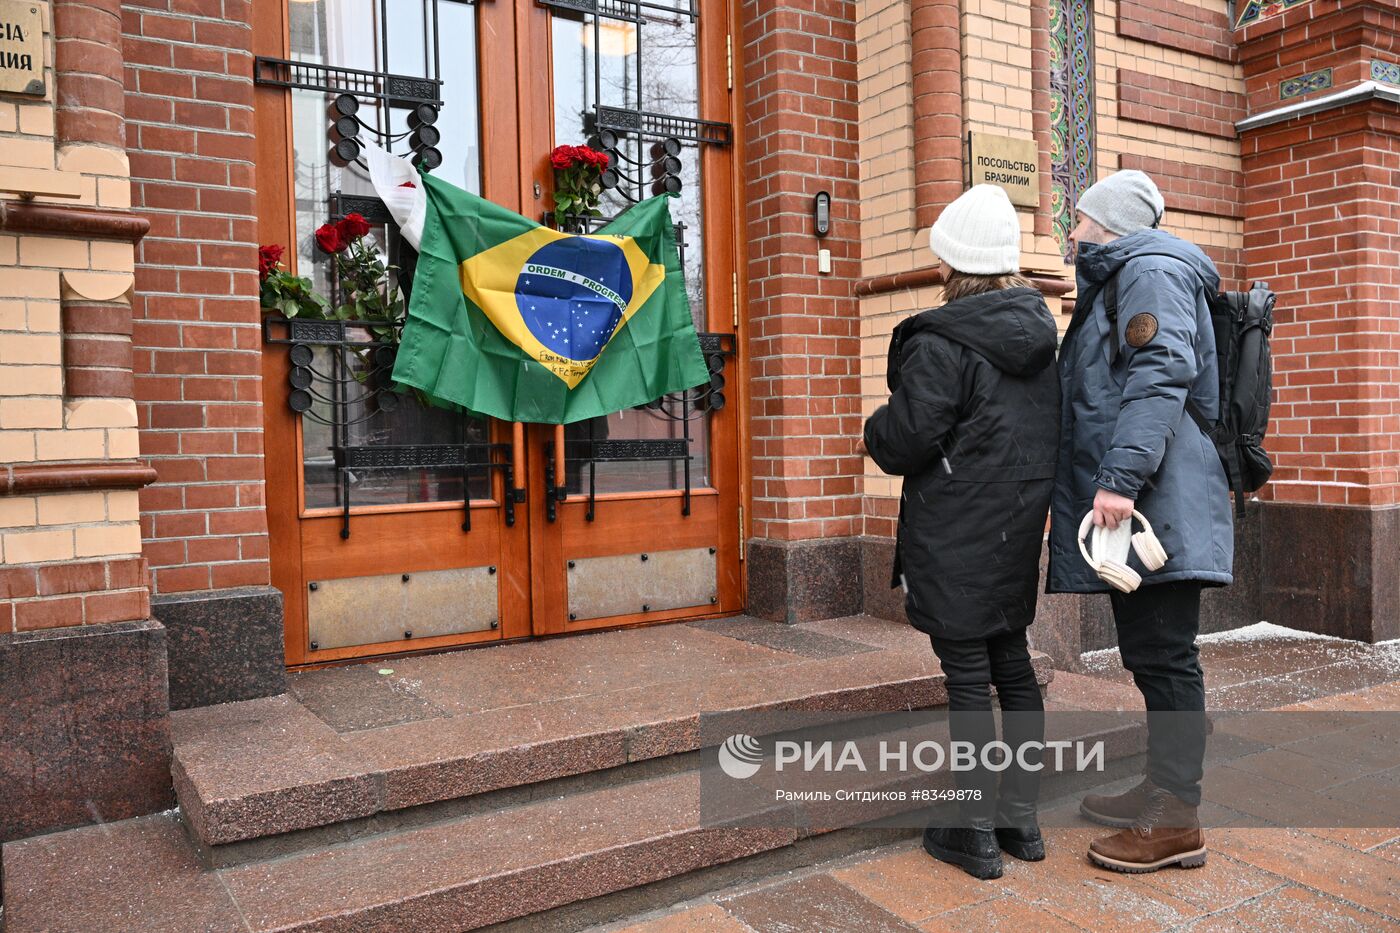 Цветы в память о Пеле у посольства Бразилии в Москве